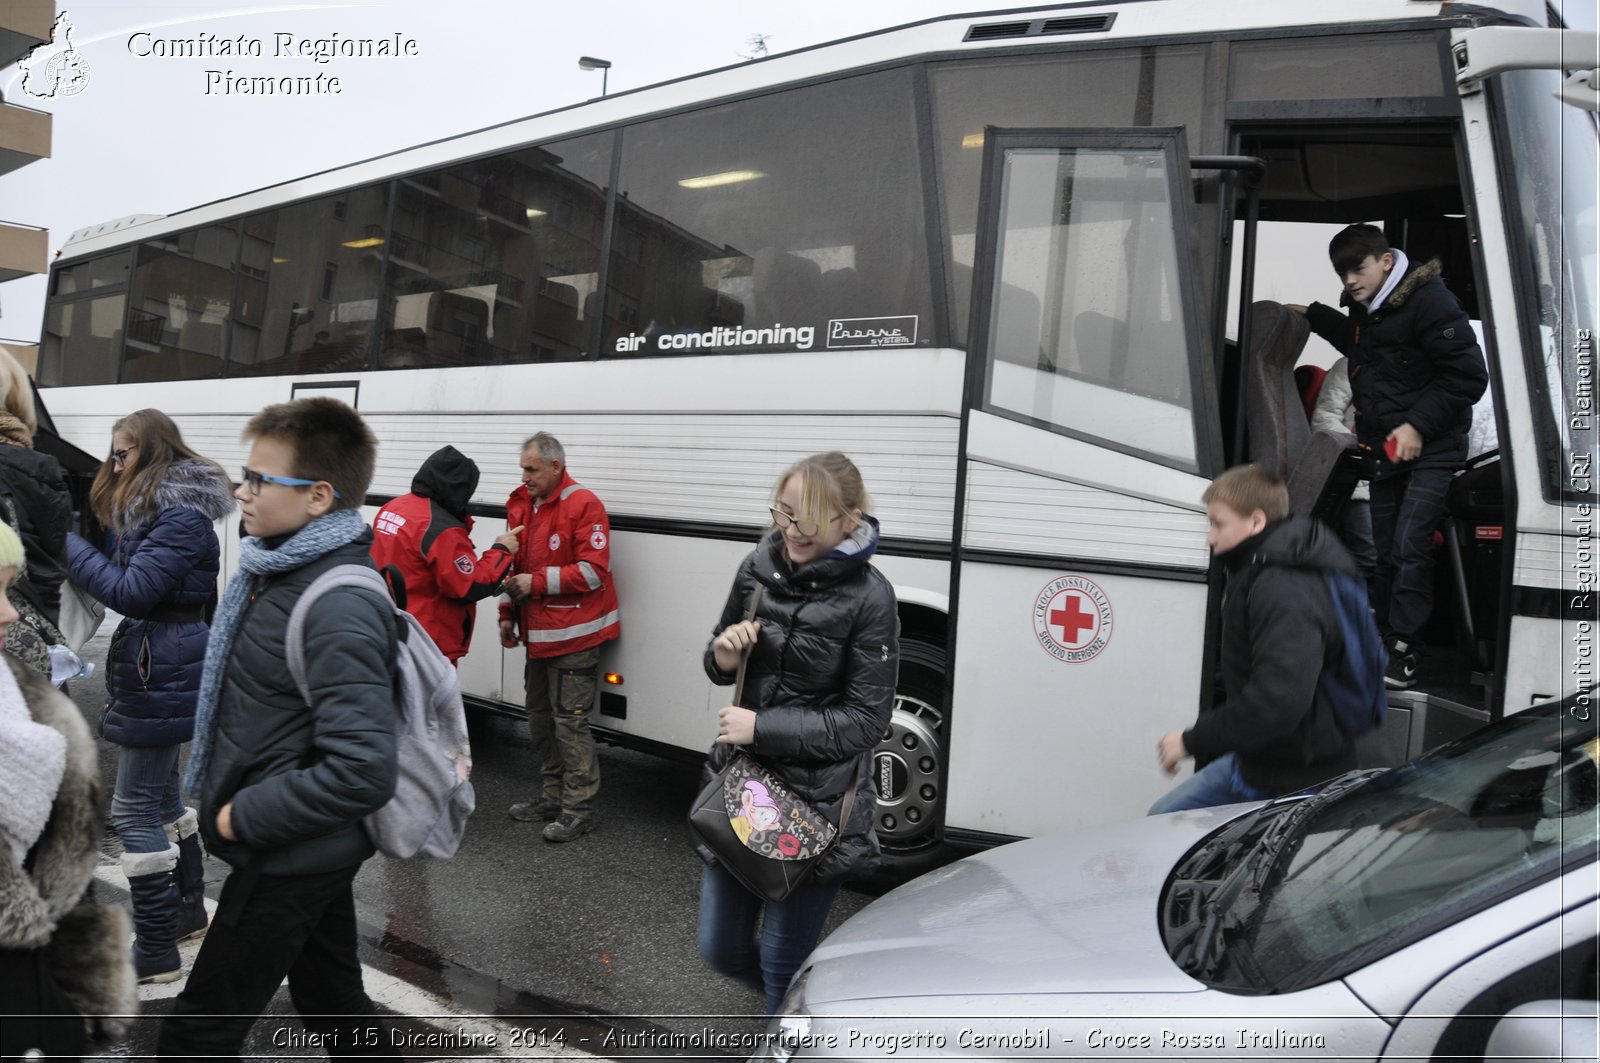 Chieri 15 Dicembre 2014 - Aiutiamoliasorridere Progetto Cernobil - Croce Rossa Italiana- Comitato Regionale del Piemonte